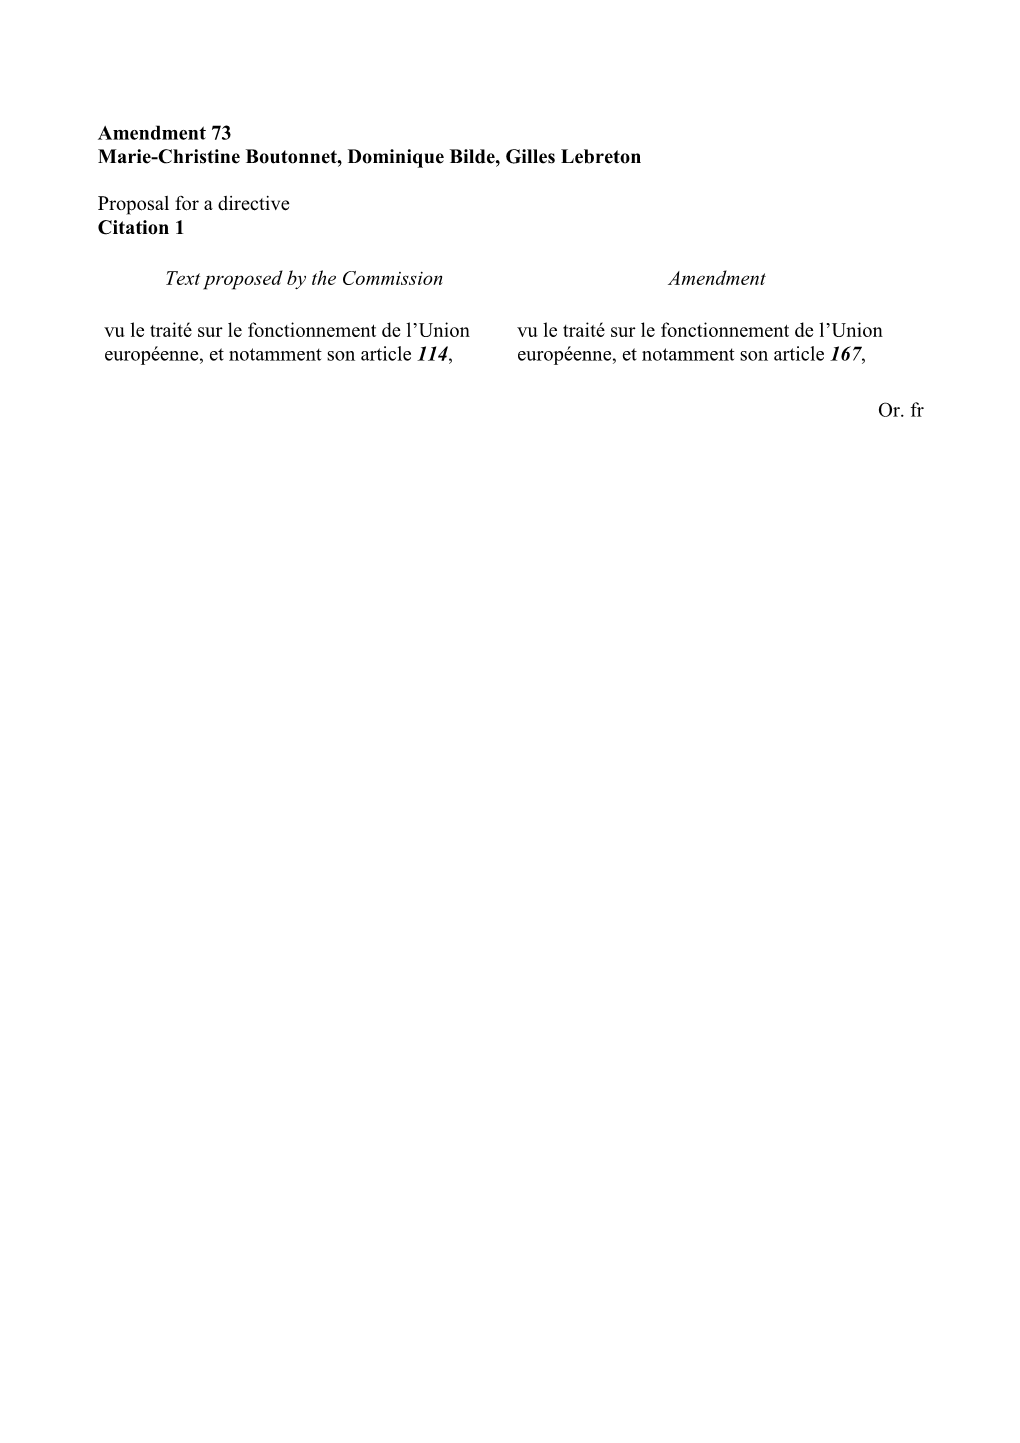 Amendment 73 Marie-Christine Boutonnet, Dominique Bilde, Gilles Lebreton Proposal for a Directive Citation 1 Text Proposed By